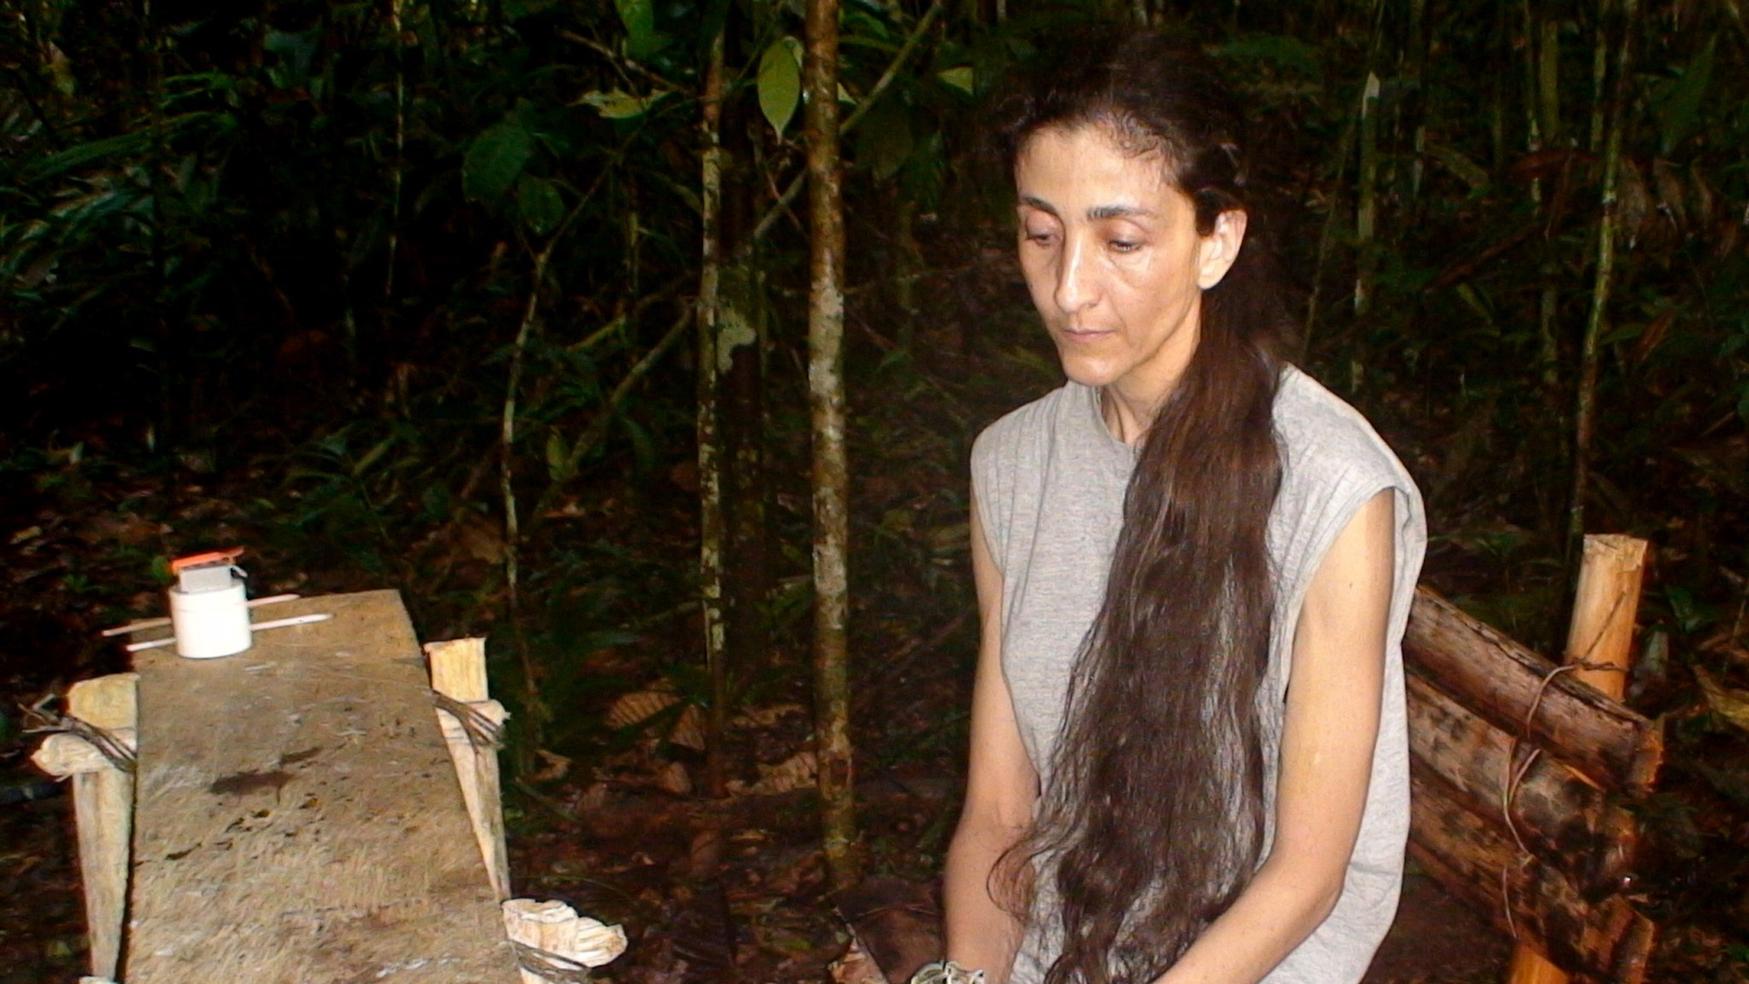 La ex candidata presidencial Ingrid Betancourt durante el su cautiverio en la selva en 2002, cuando fue secuestrada por la guerrilla de las FARC